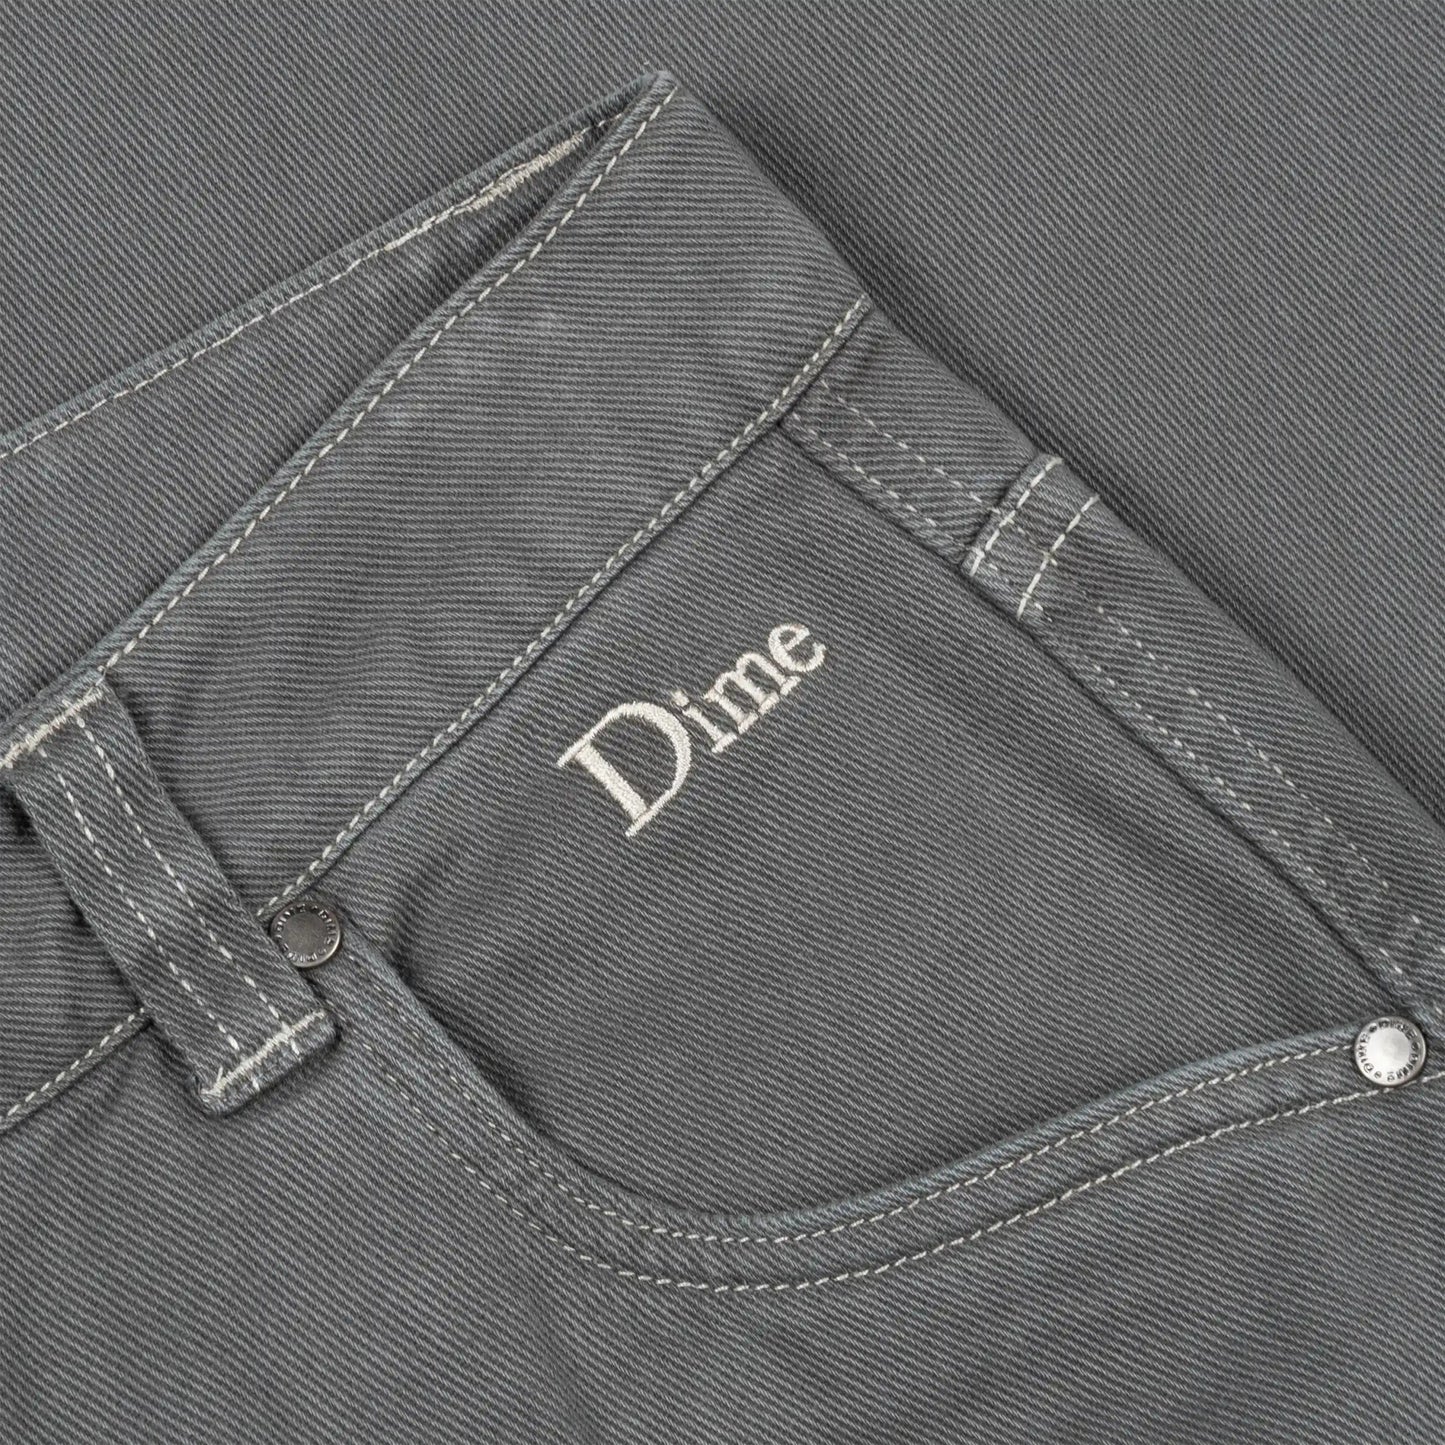 Dime Classic Baggy Denim Pants, dark gray - Tiki Room Skateboards - 3